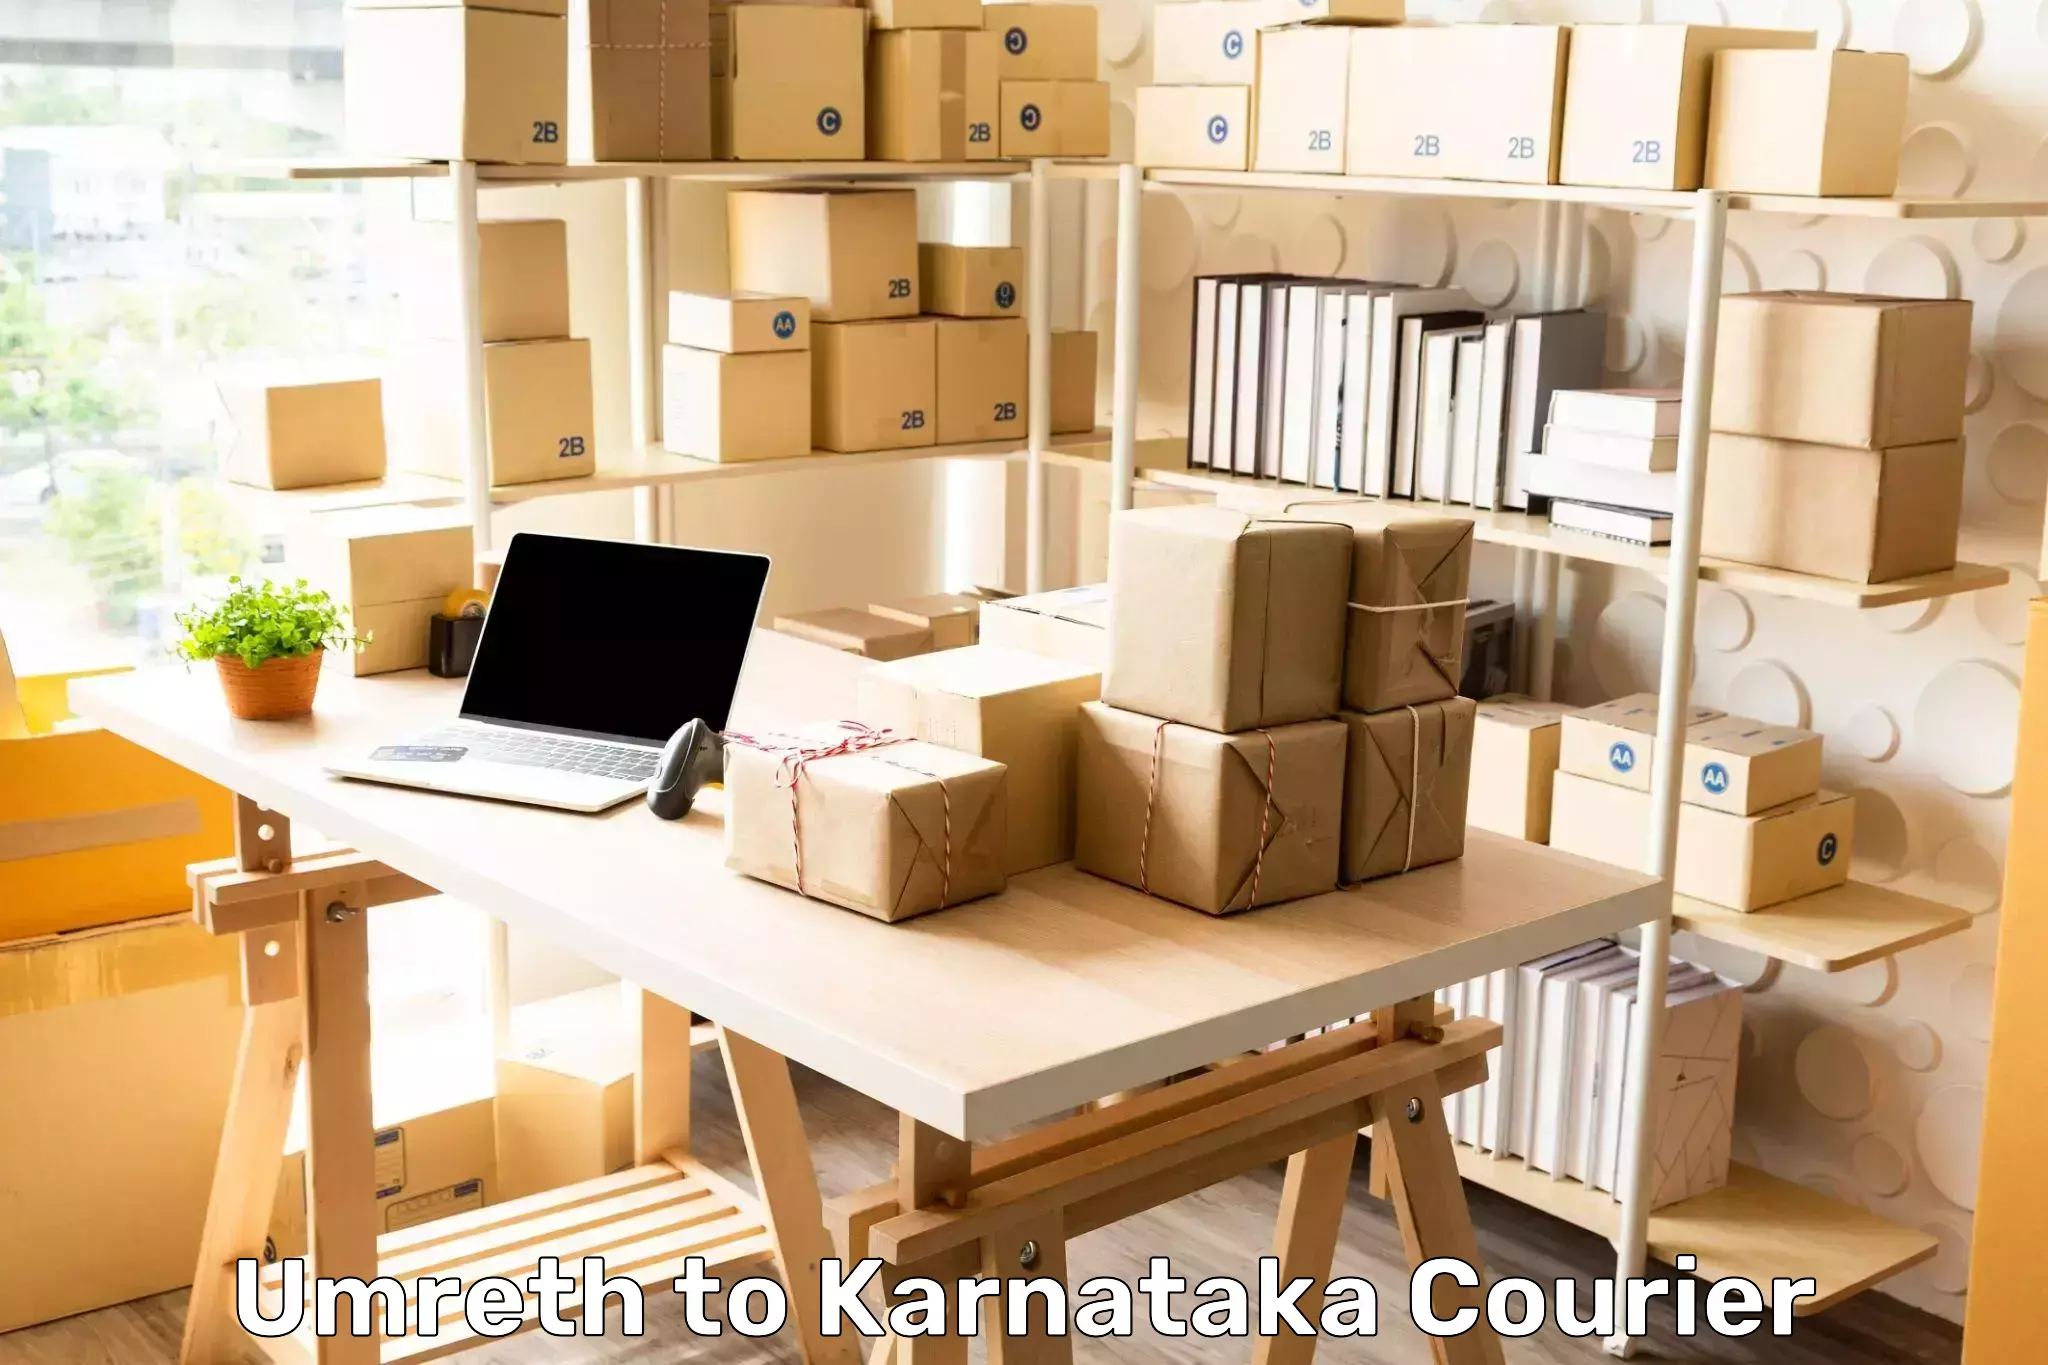 Package tracking Umreth to Karnataka